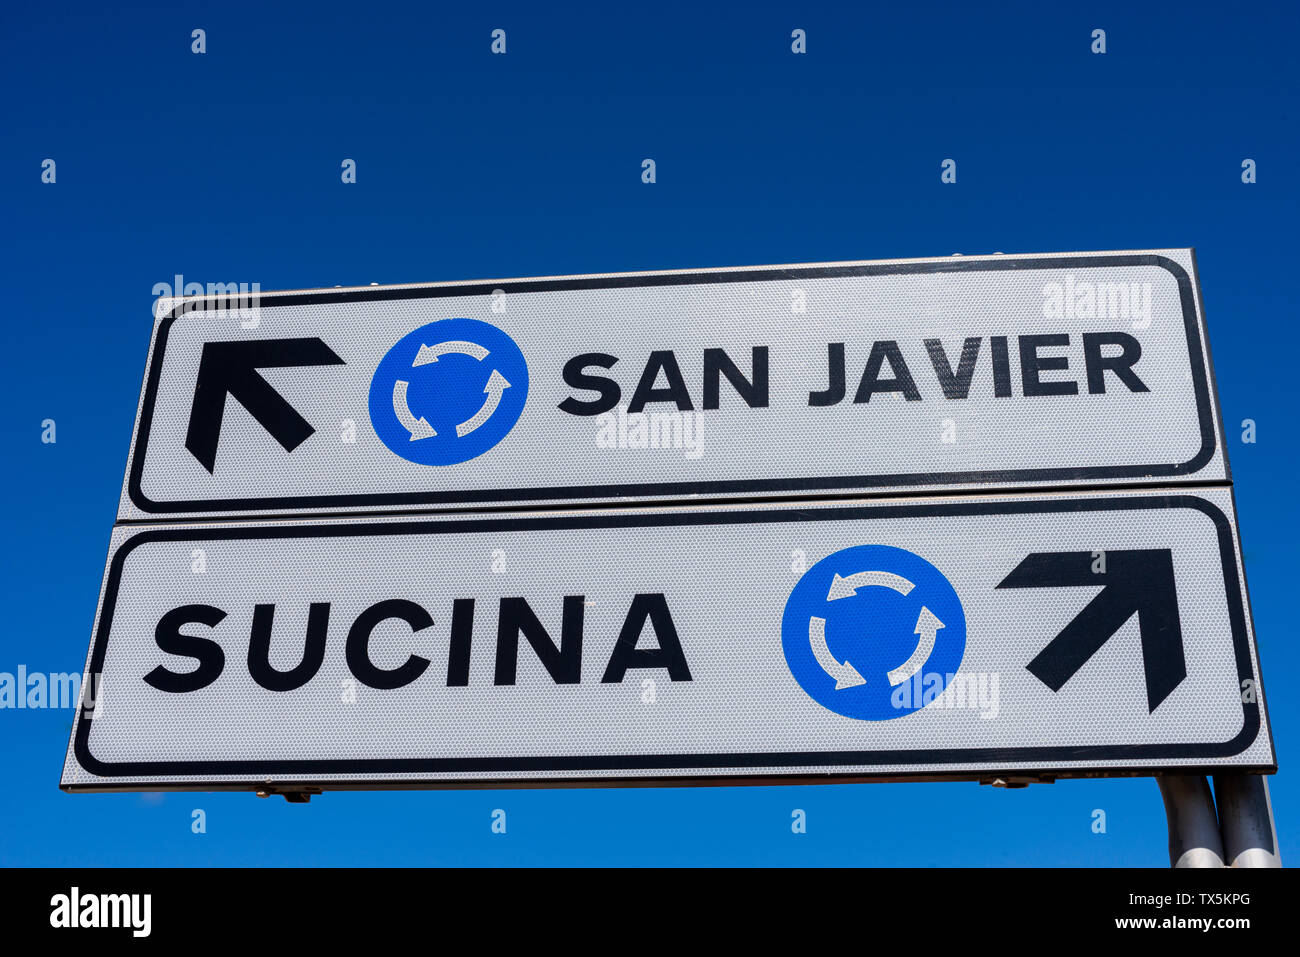 Straßenschild am Kreisverkehr mit Wegbeschreibung nach San Javier und Sucina. Blauer Himmel. Richtungspfeil. Richtungspfeile Stockfoto